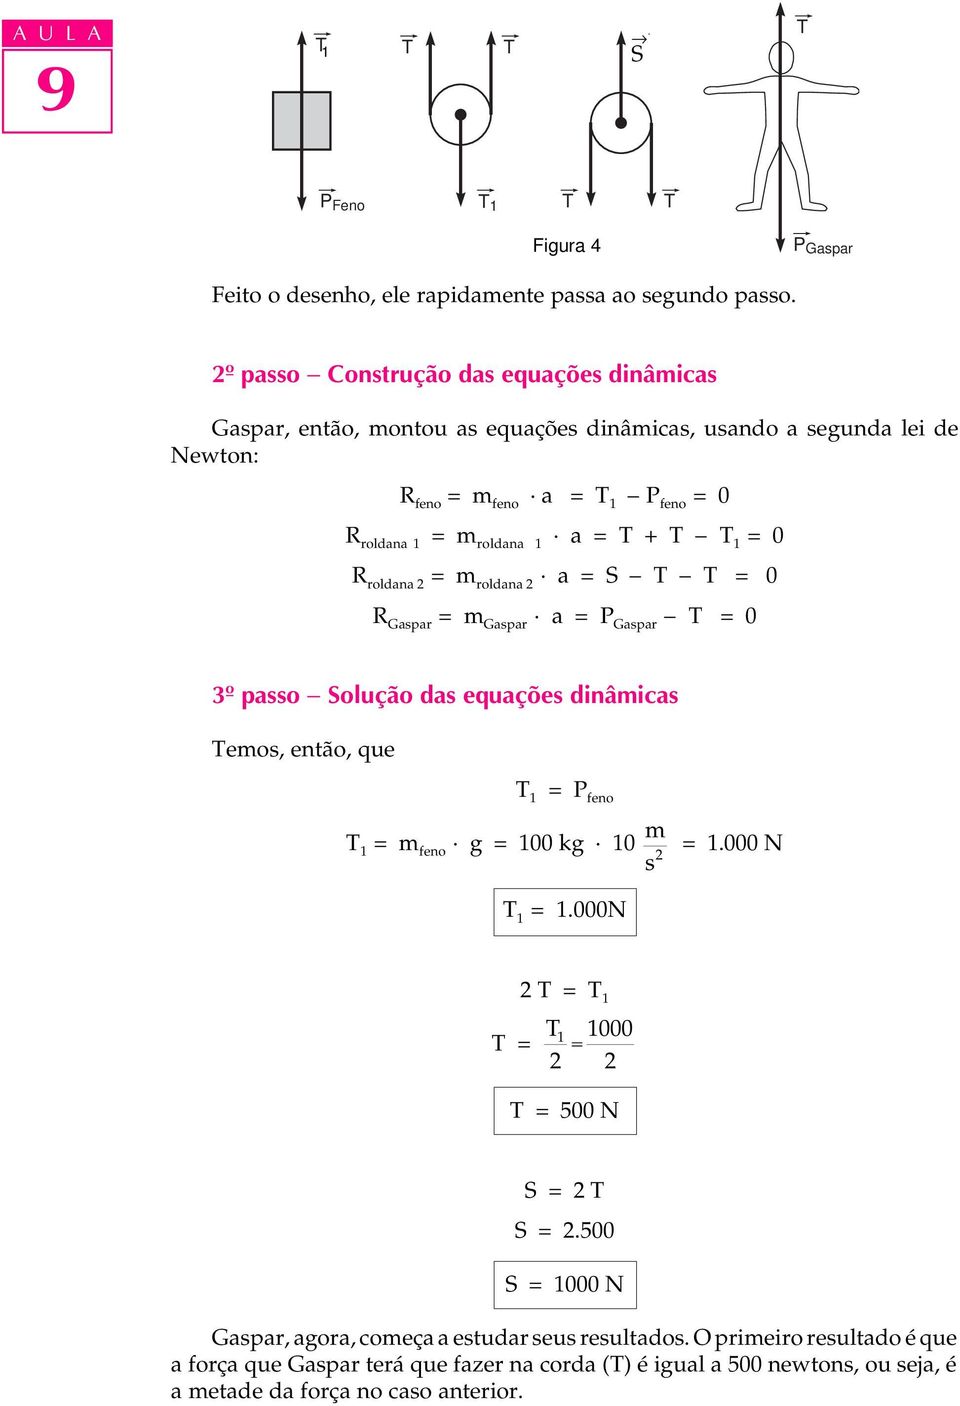 = + - 1 = 0 R roldana 2 = m roldana 2 a = S - - = 0 R Gaspar = m Gaspar a = P Gaspar - = 0 3º passo - Solução das equações dinâmicas emos, então, que 1 = P feno 1 = m feno g = 100 kg 10